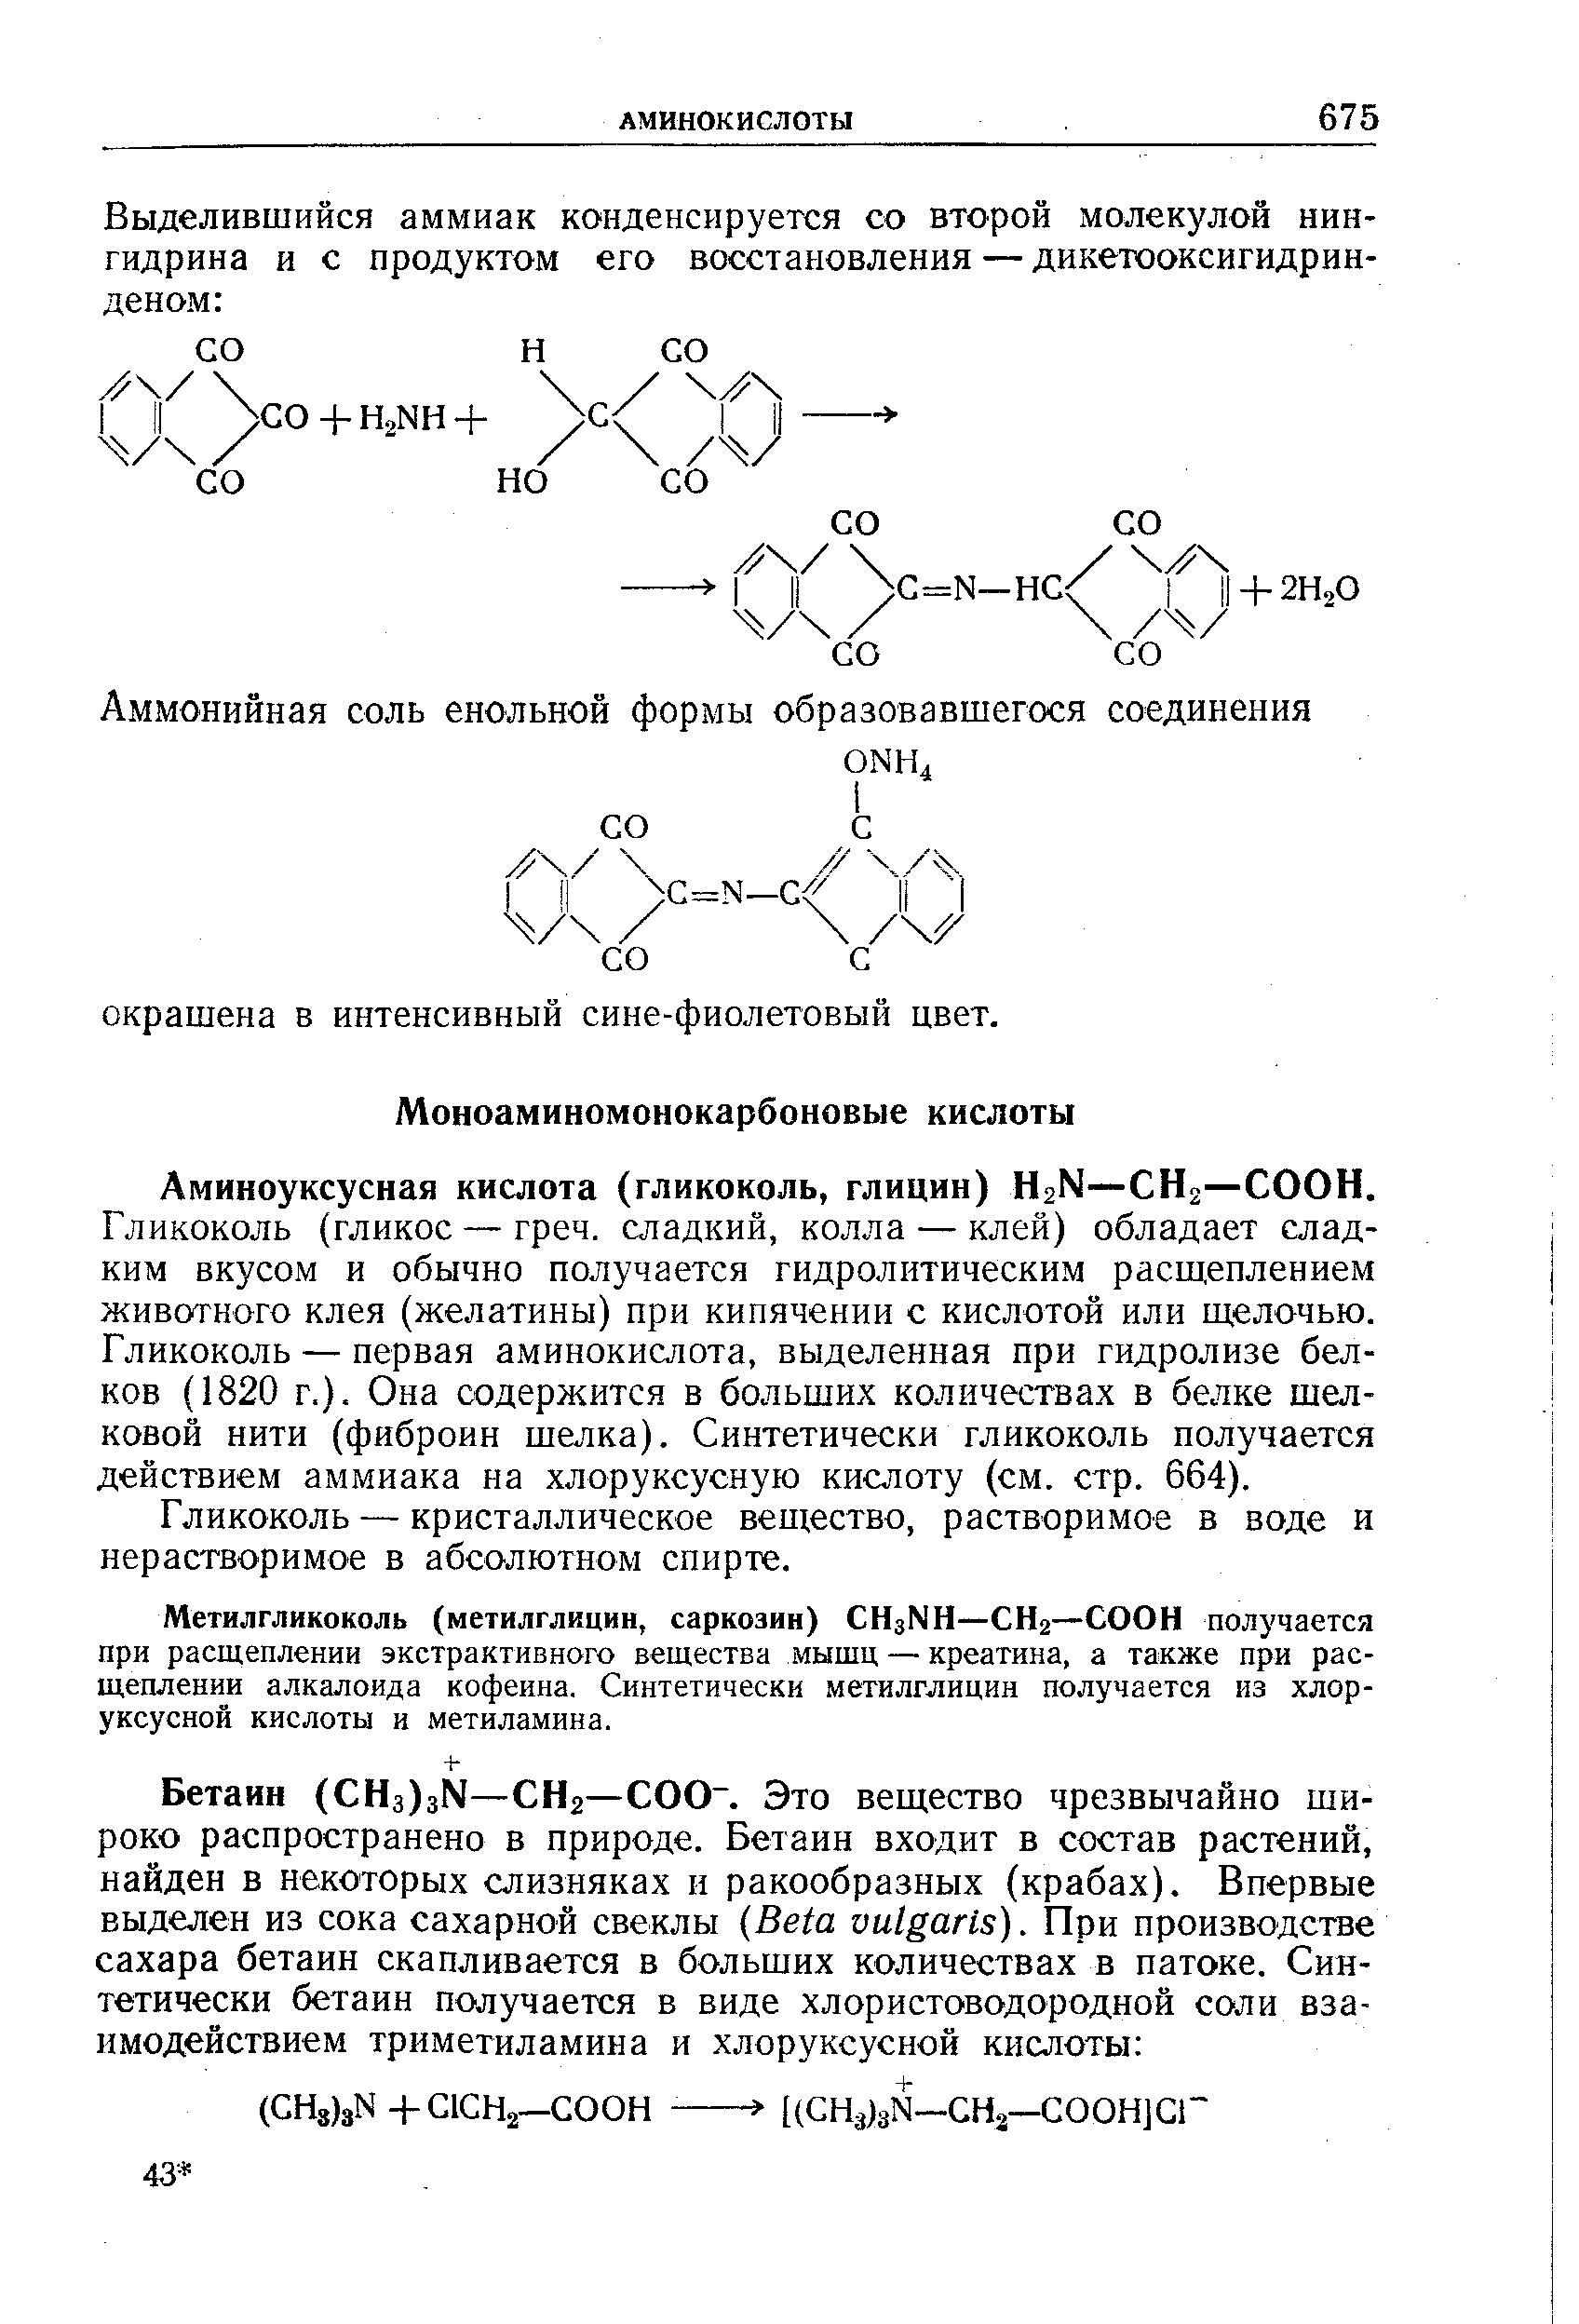 Аминоуксусная кислота (гликоколь, глицин) H2N—СНг—СООН.